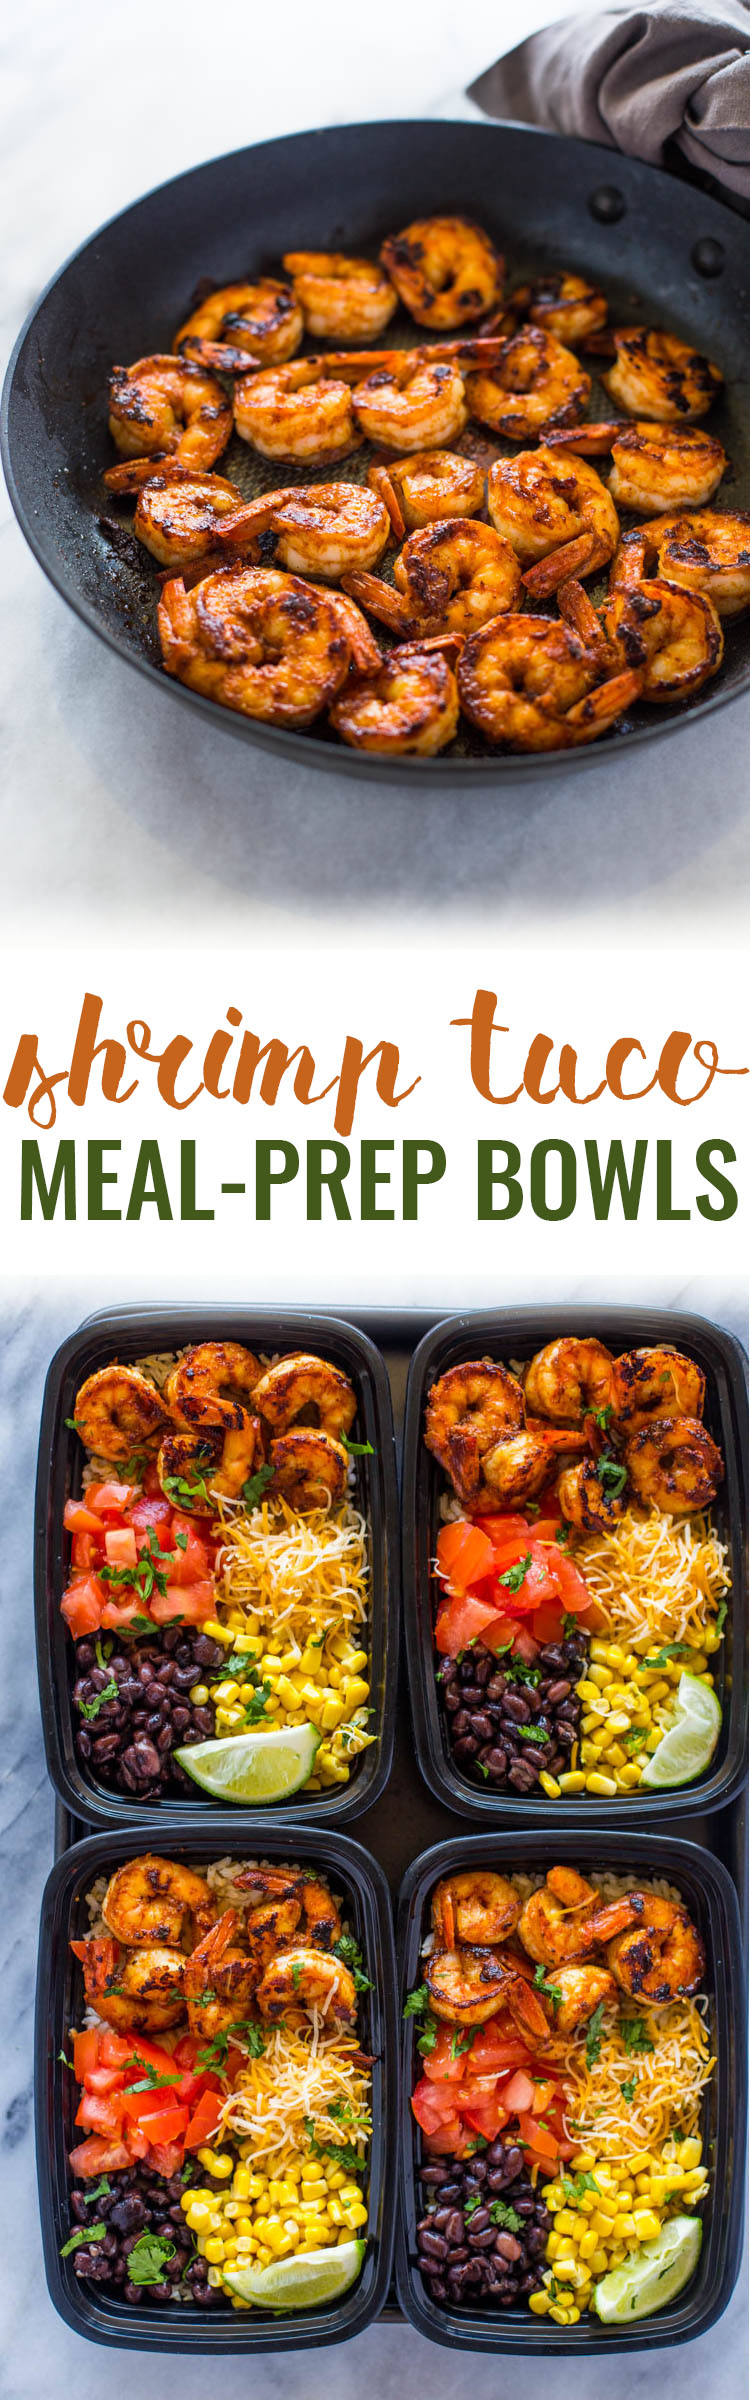 meal-prep shrimp taco bowls |